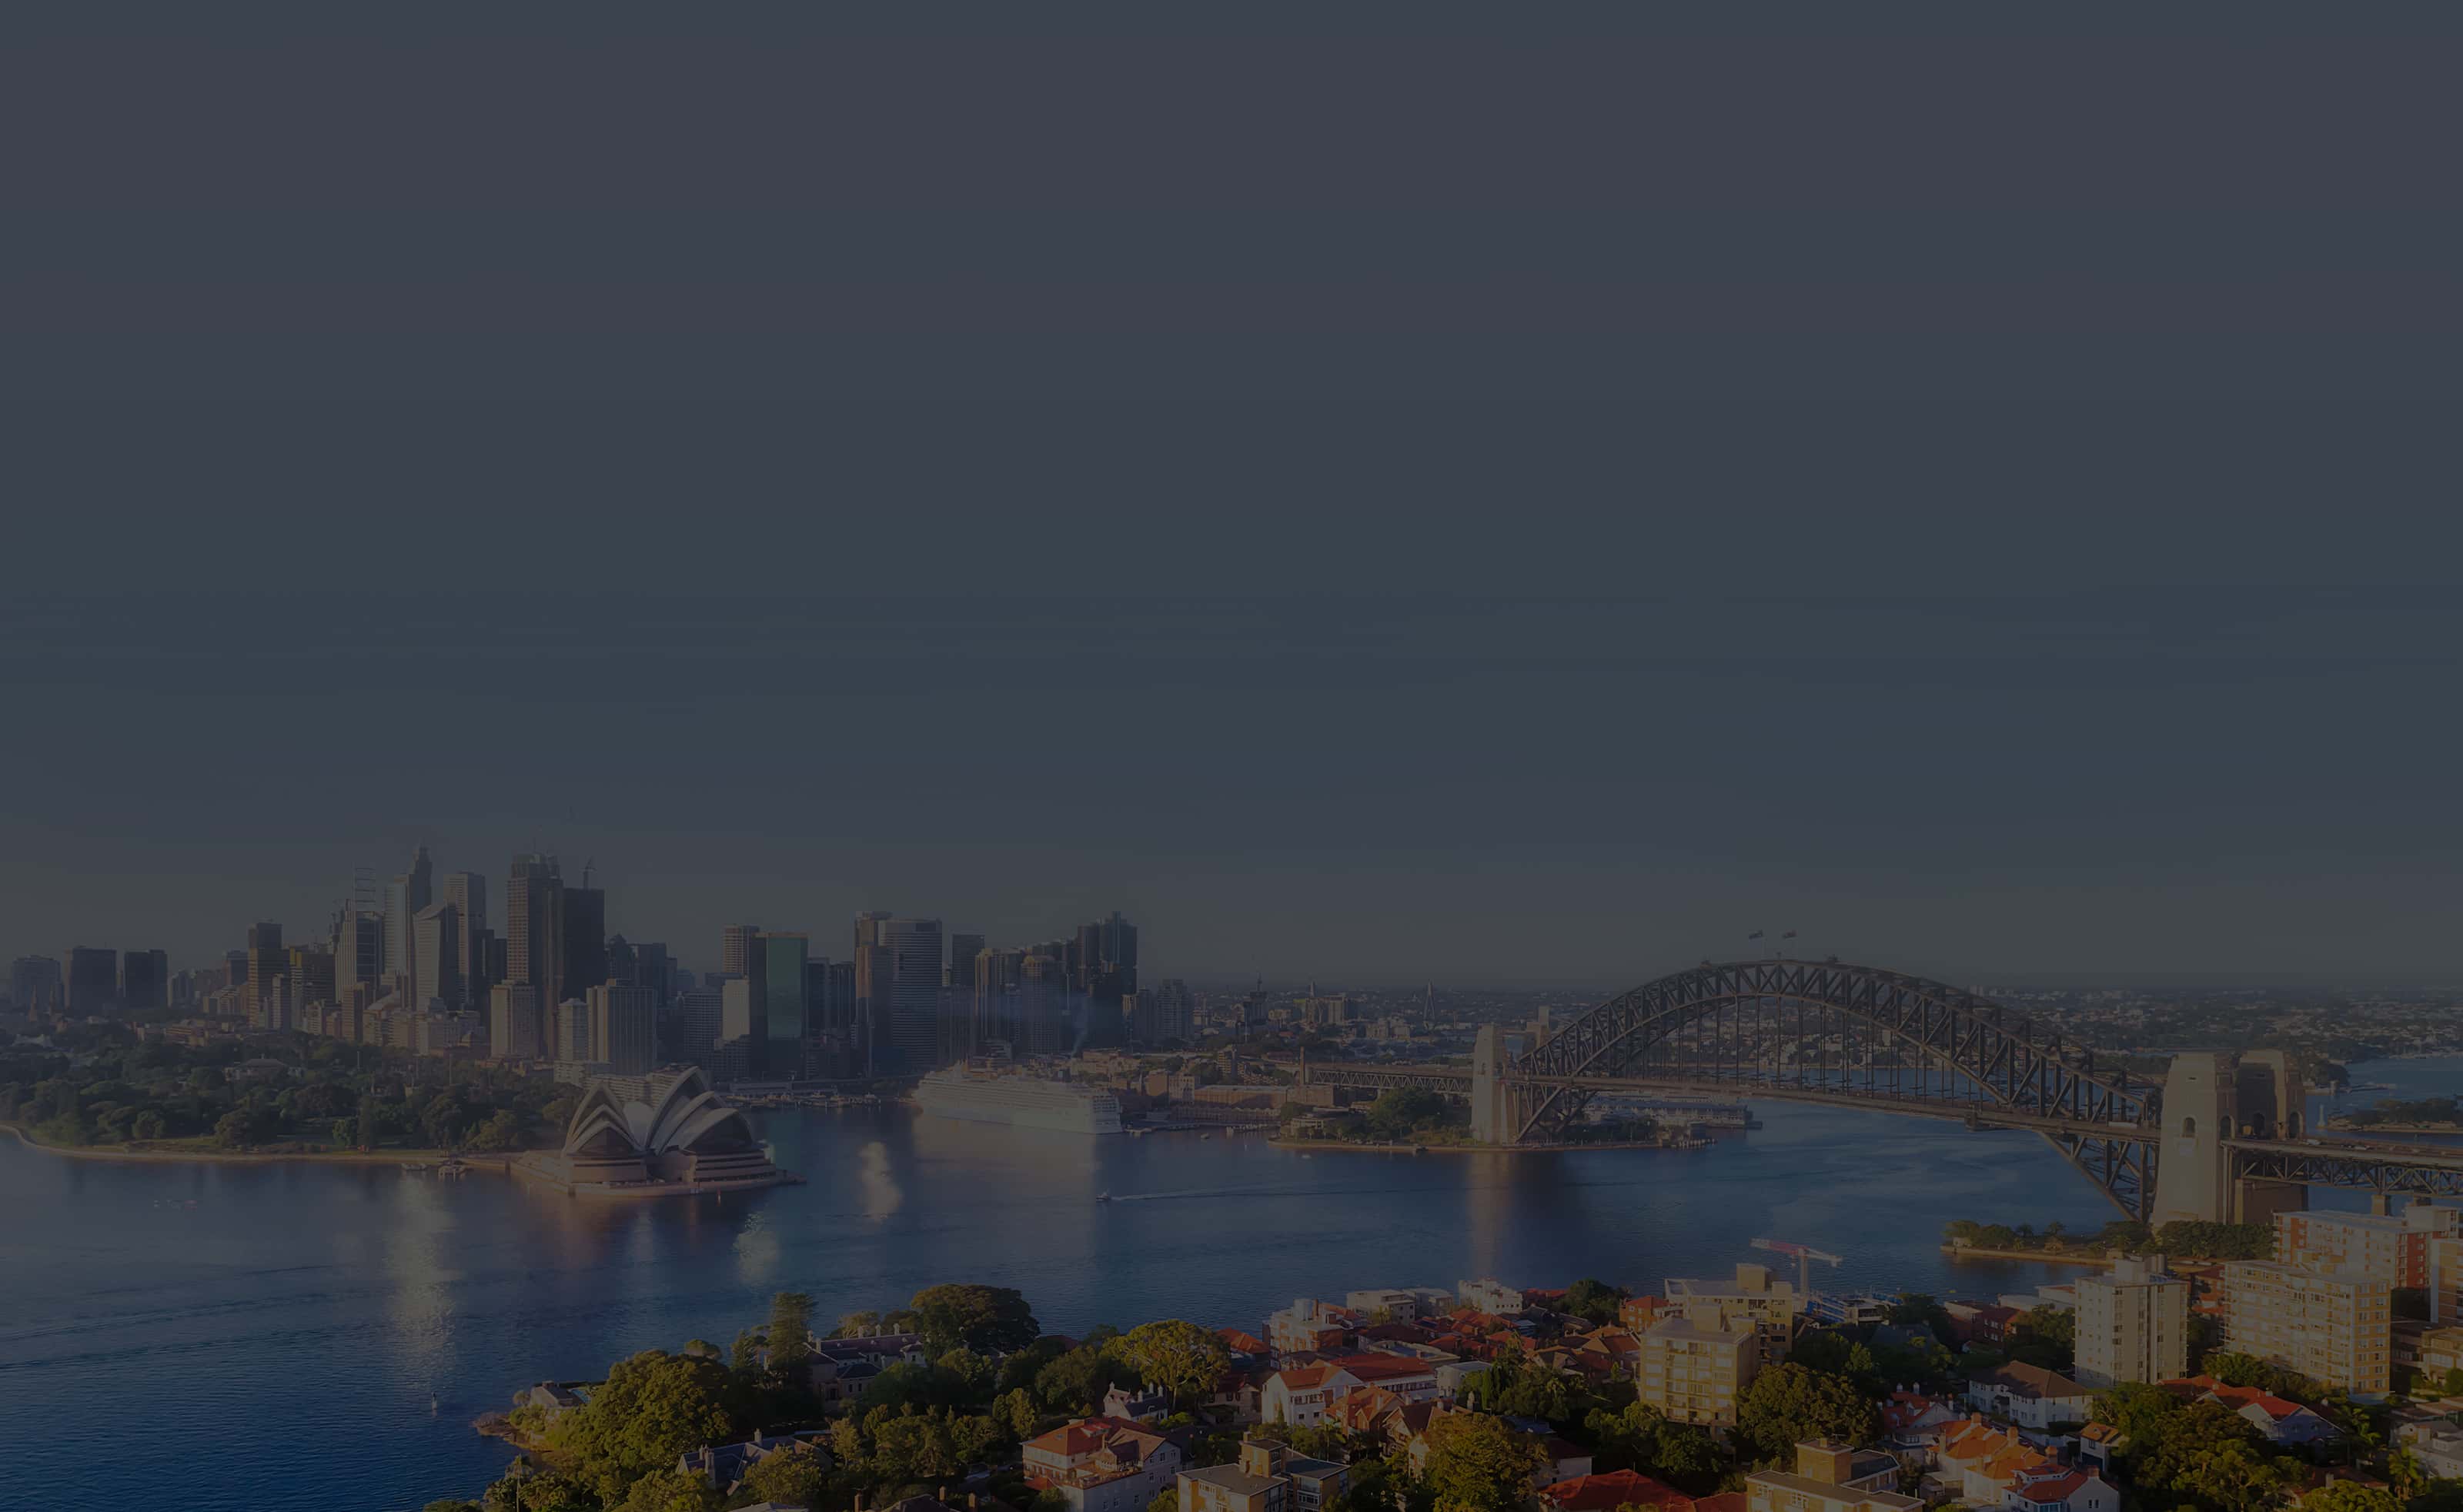 Background image of Sydney - Australia